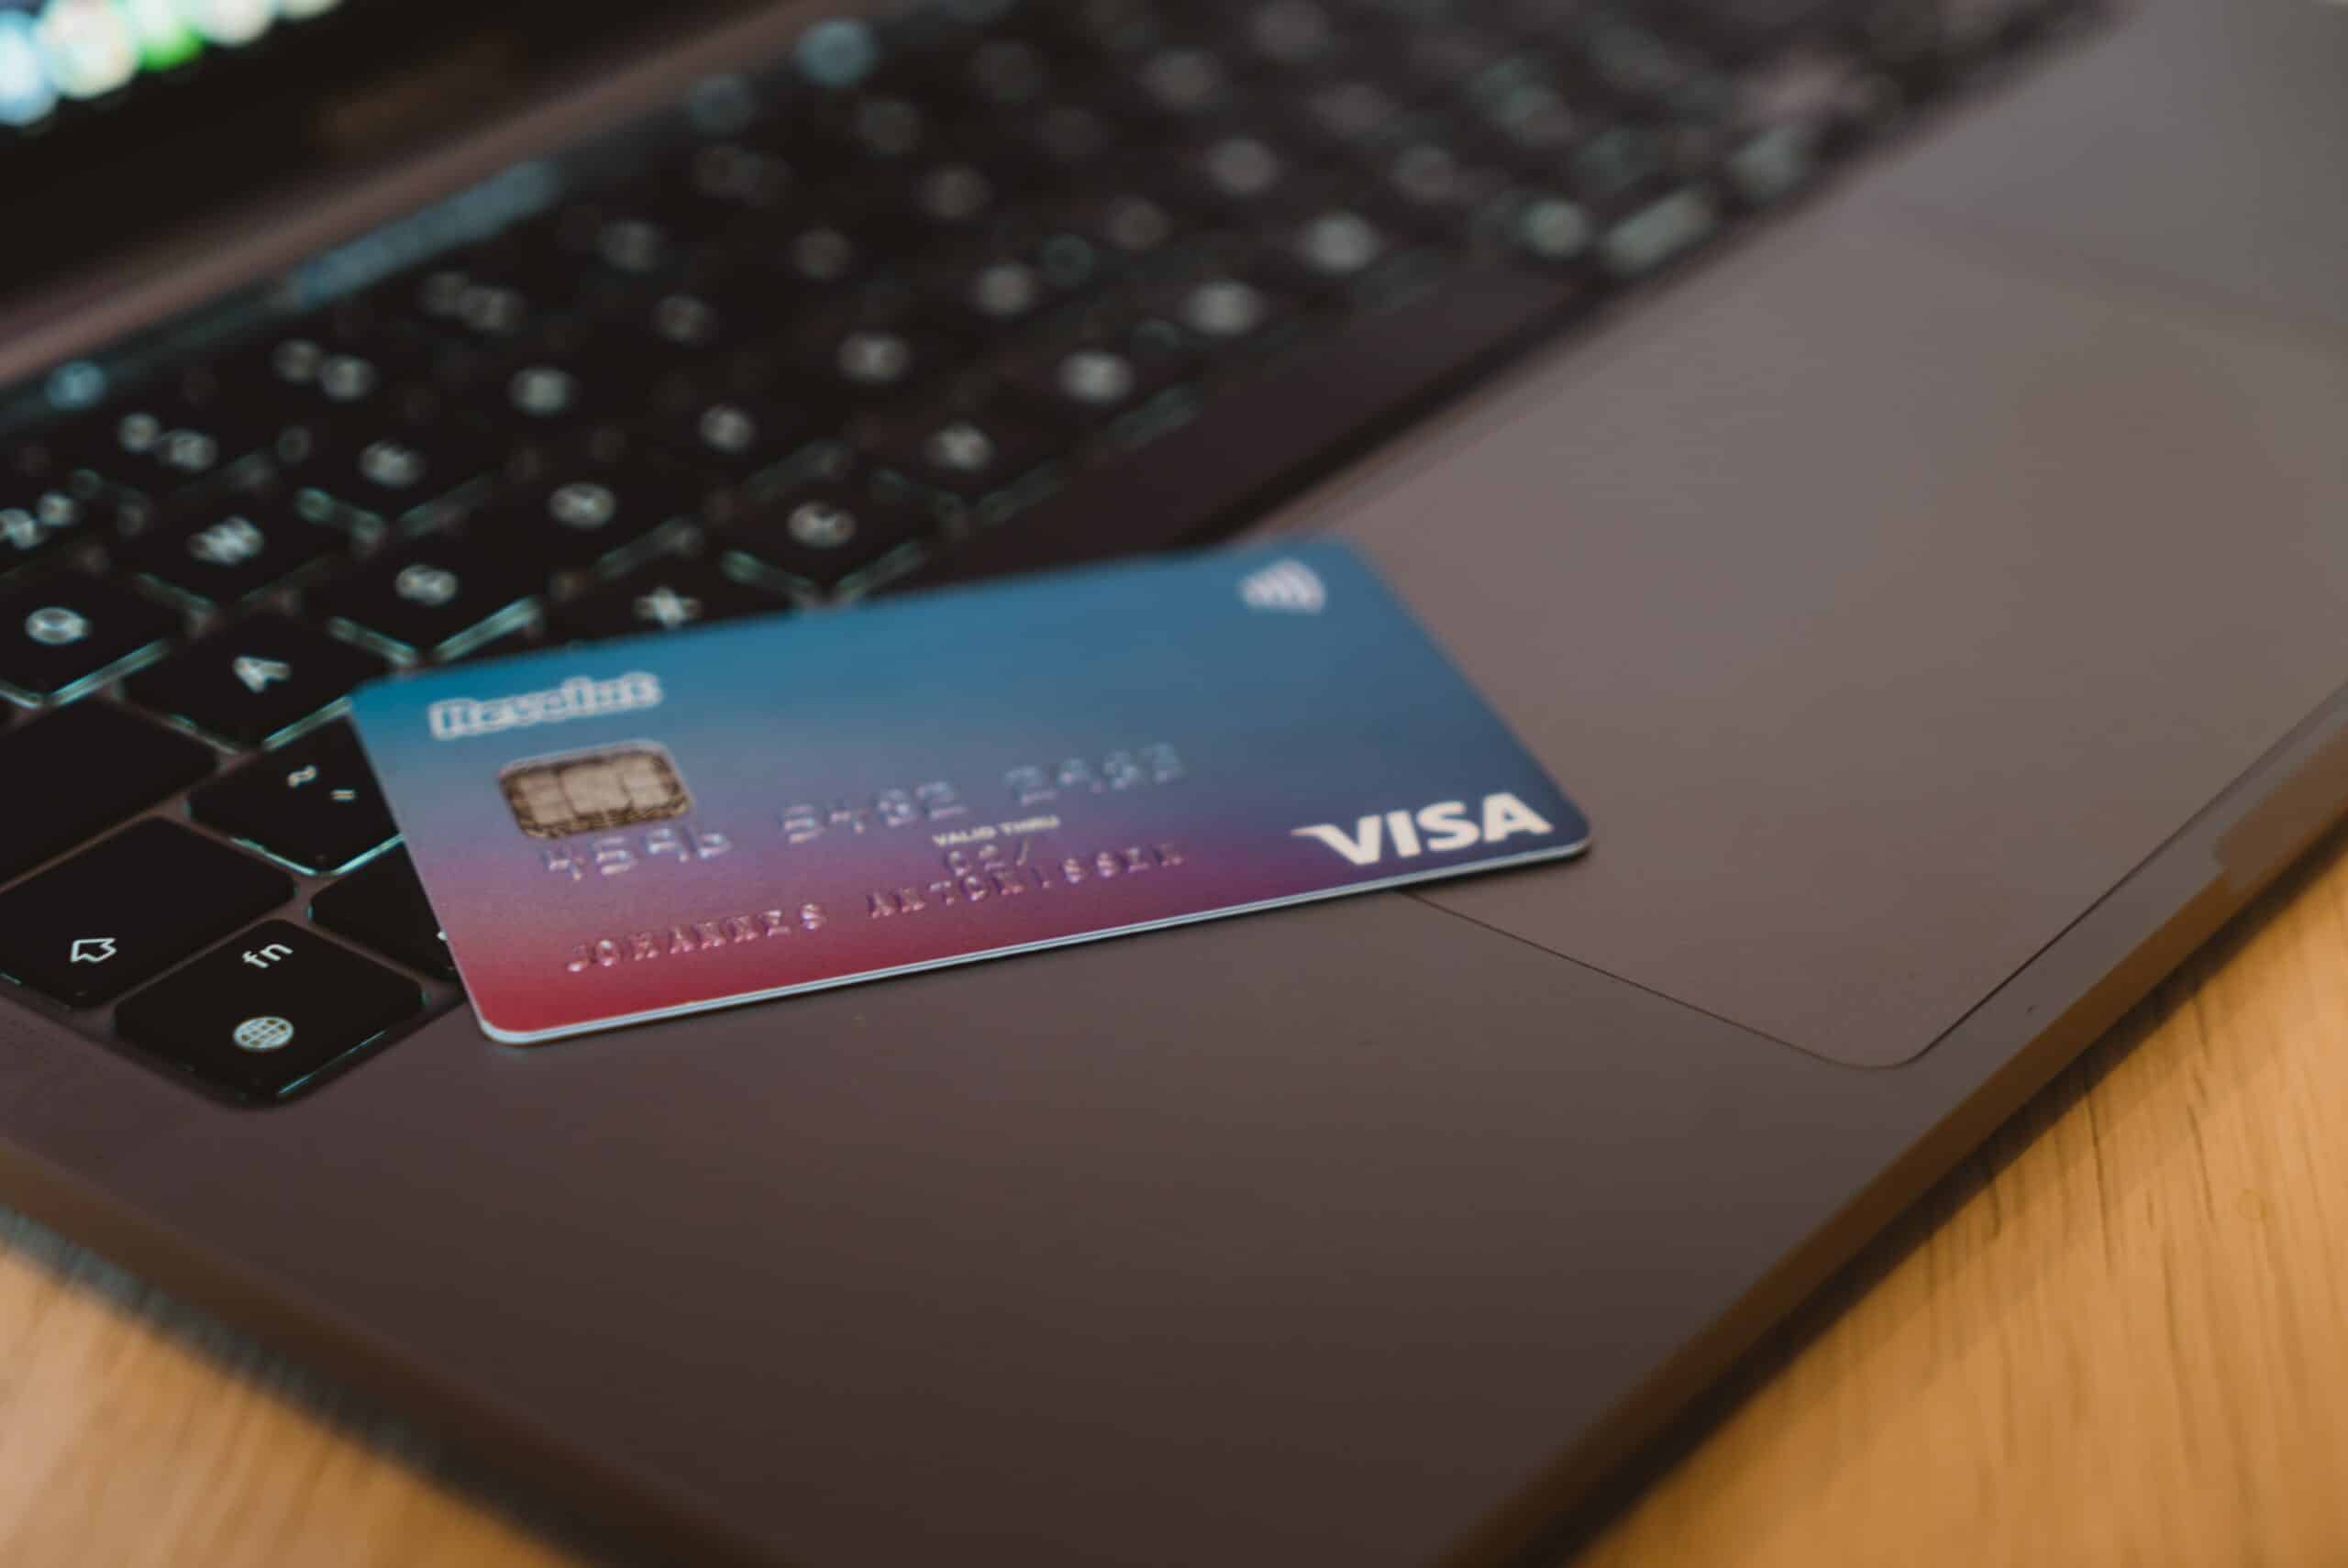 Cartão de crédito azul e rosa da bandeira Visa deitado em cima de um notebook aberto. É possível ver um pequeno pedaço da tela do computador ligado. - Foto: CardMapr.nl via Unsplash